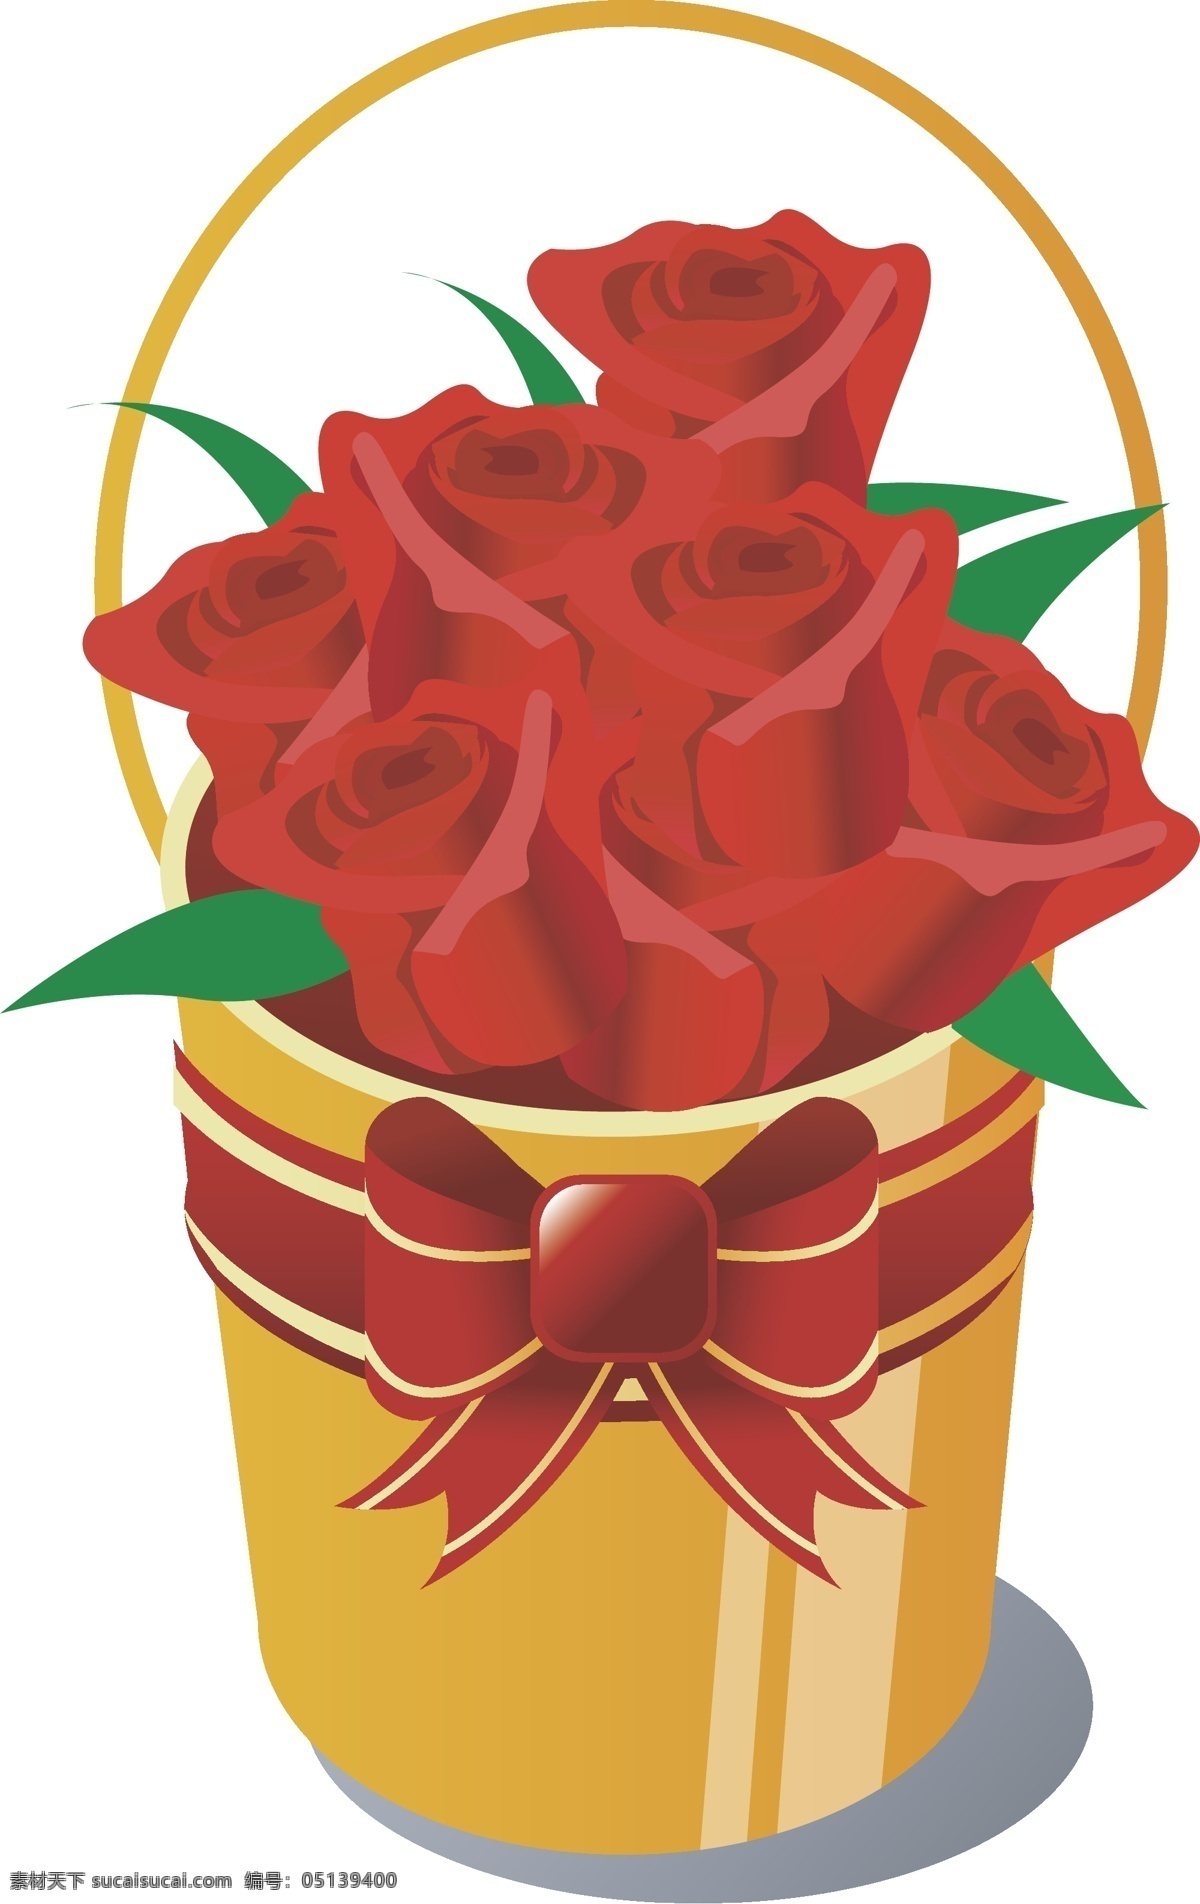 玫瑰 桶 缎带 红玫瑰 花篮 花束 节日素材 礼品花 玫瑰花束 情人节 玫瑰桶 花筒 矢量图库 情人节七夕